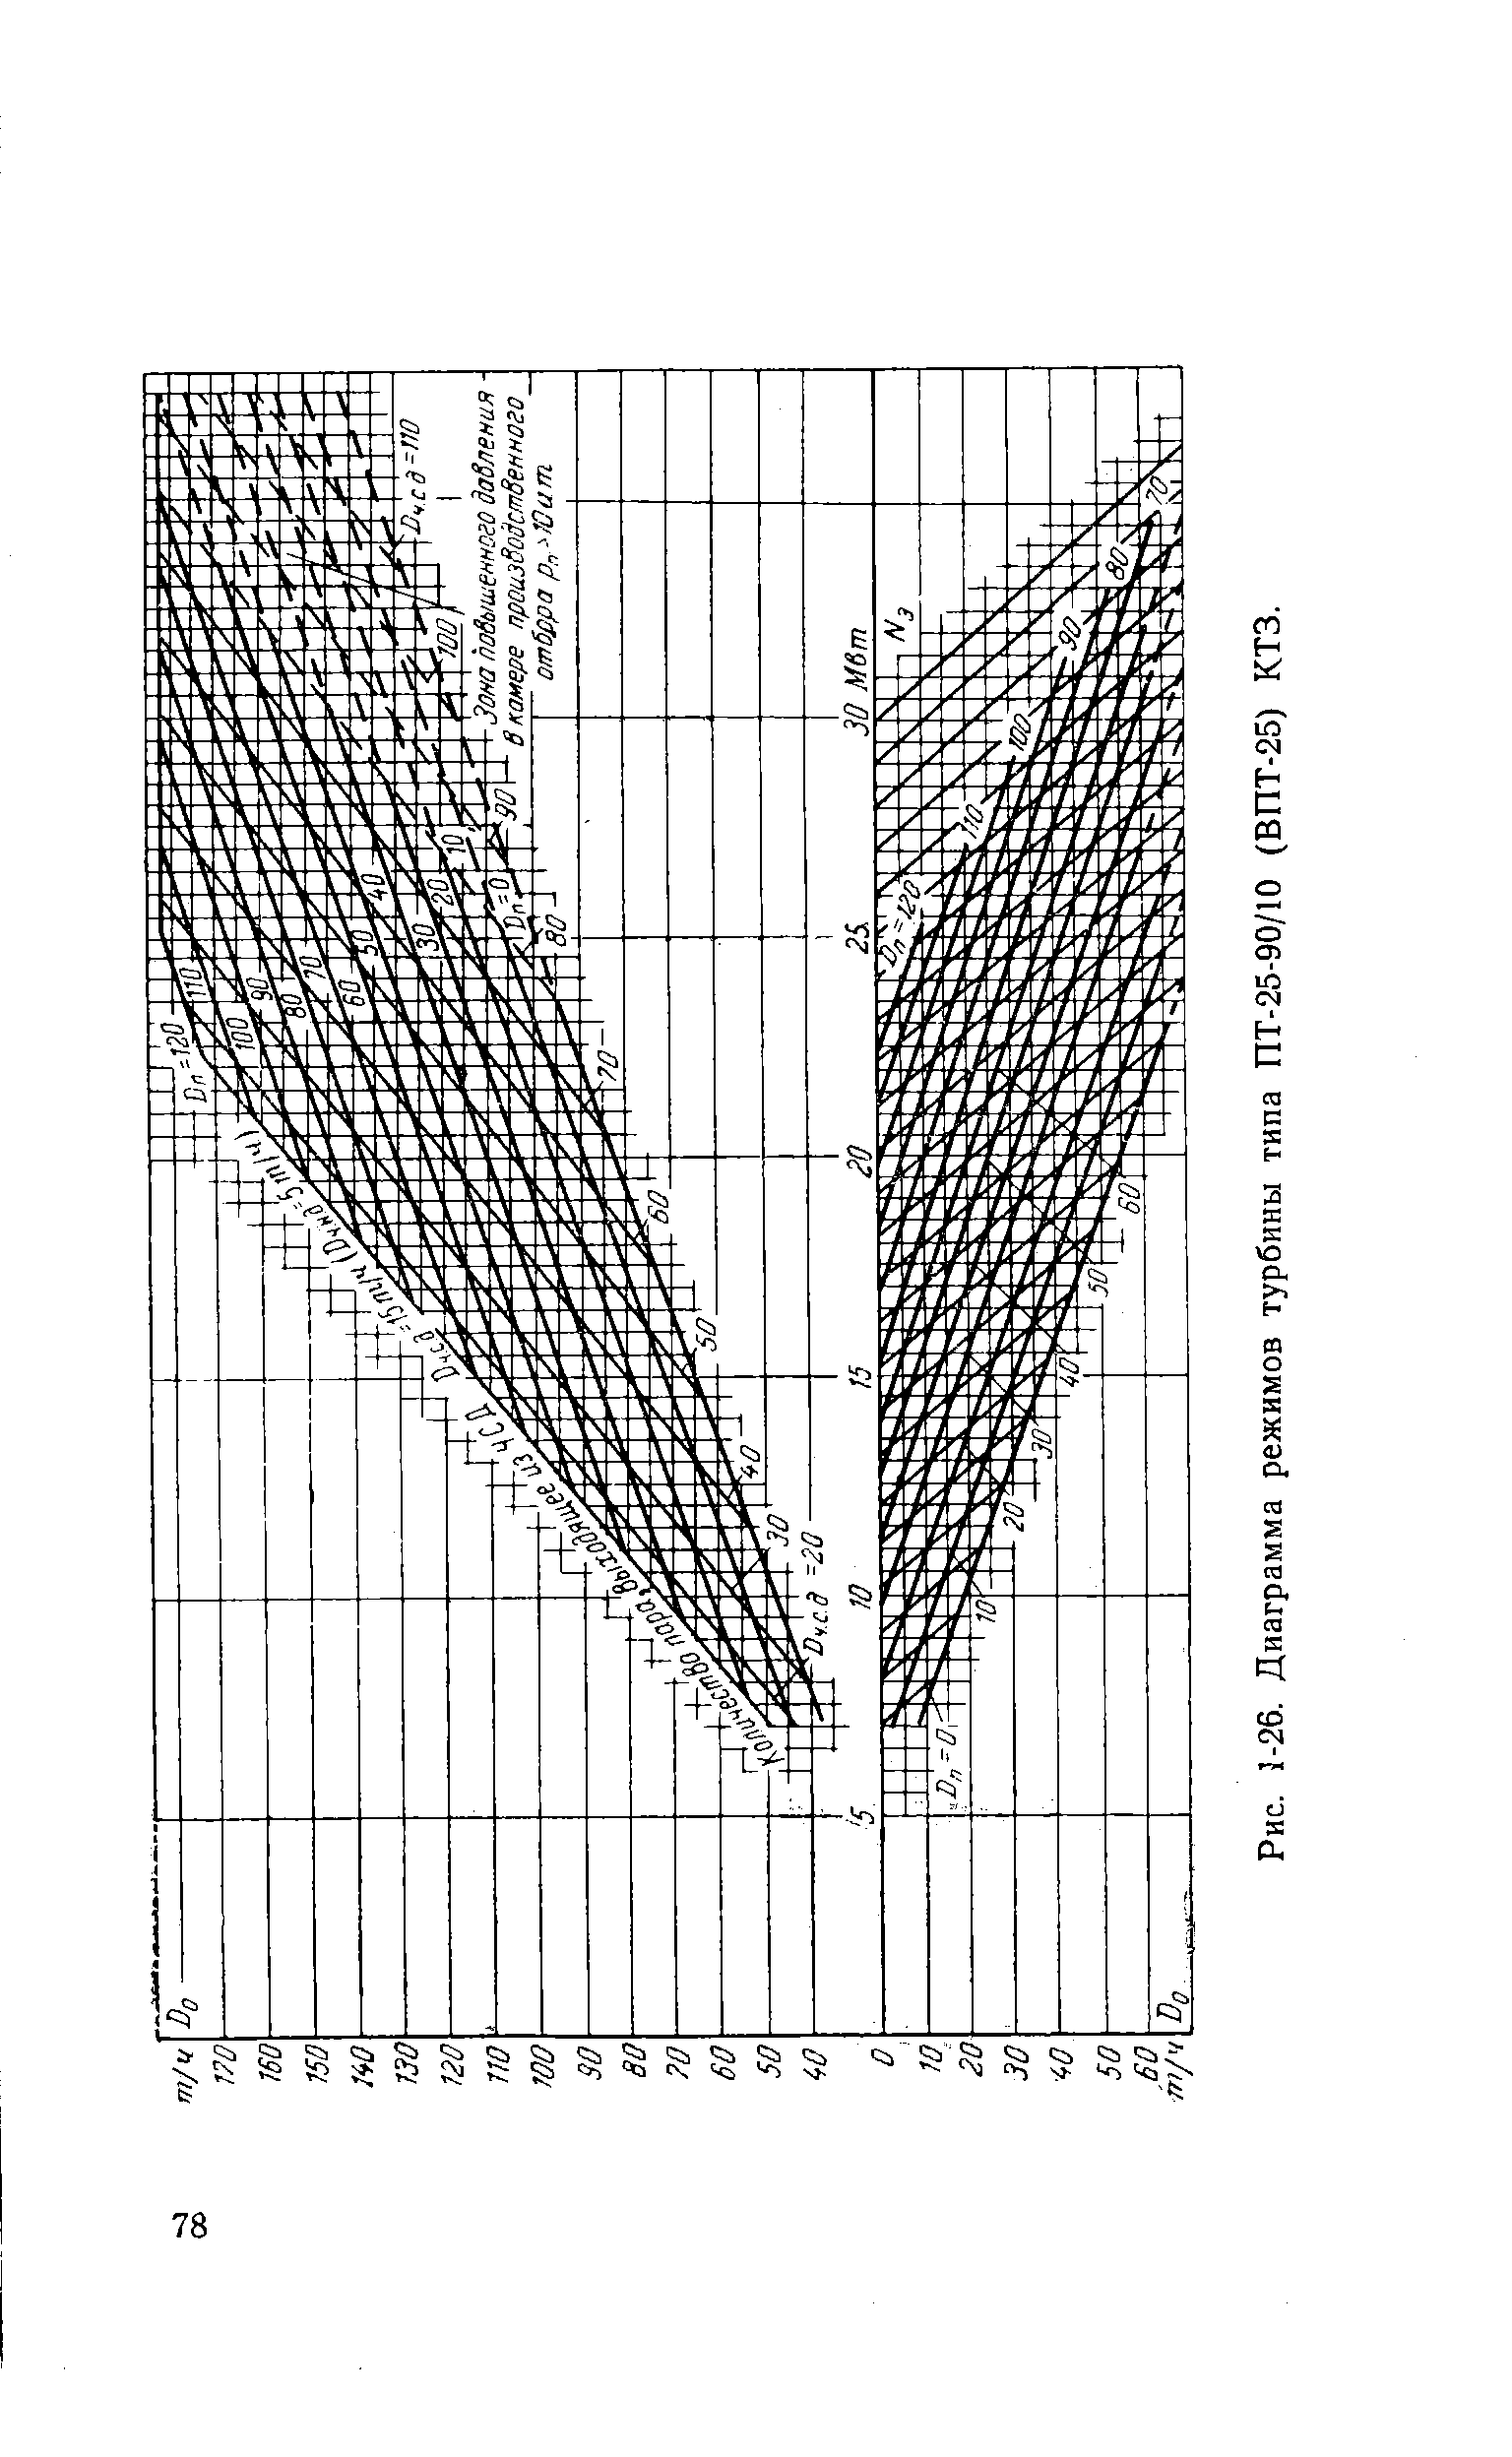 Рис. 5-26. Диаграмма режимов турбины типа ПТ-25-90/10 (ВПТ-25) КТЗ.
